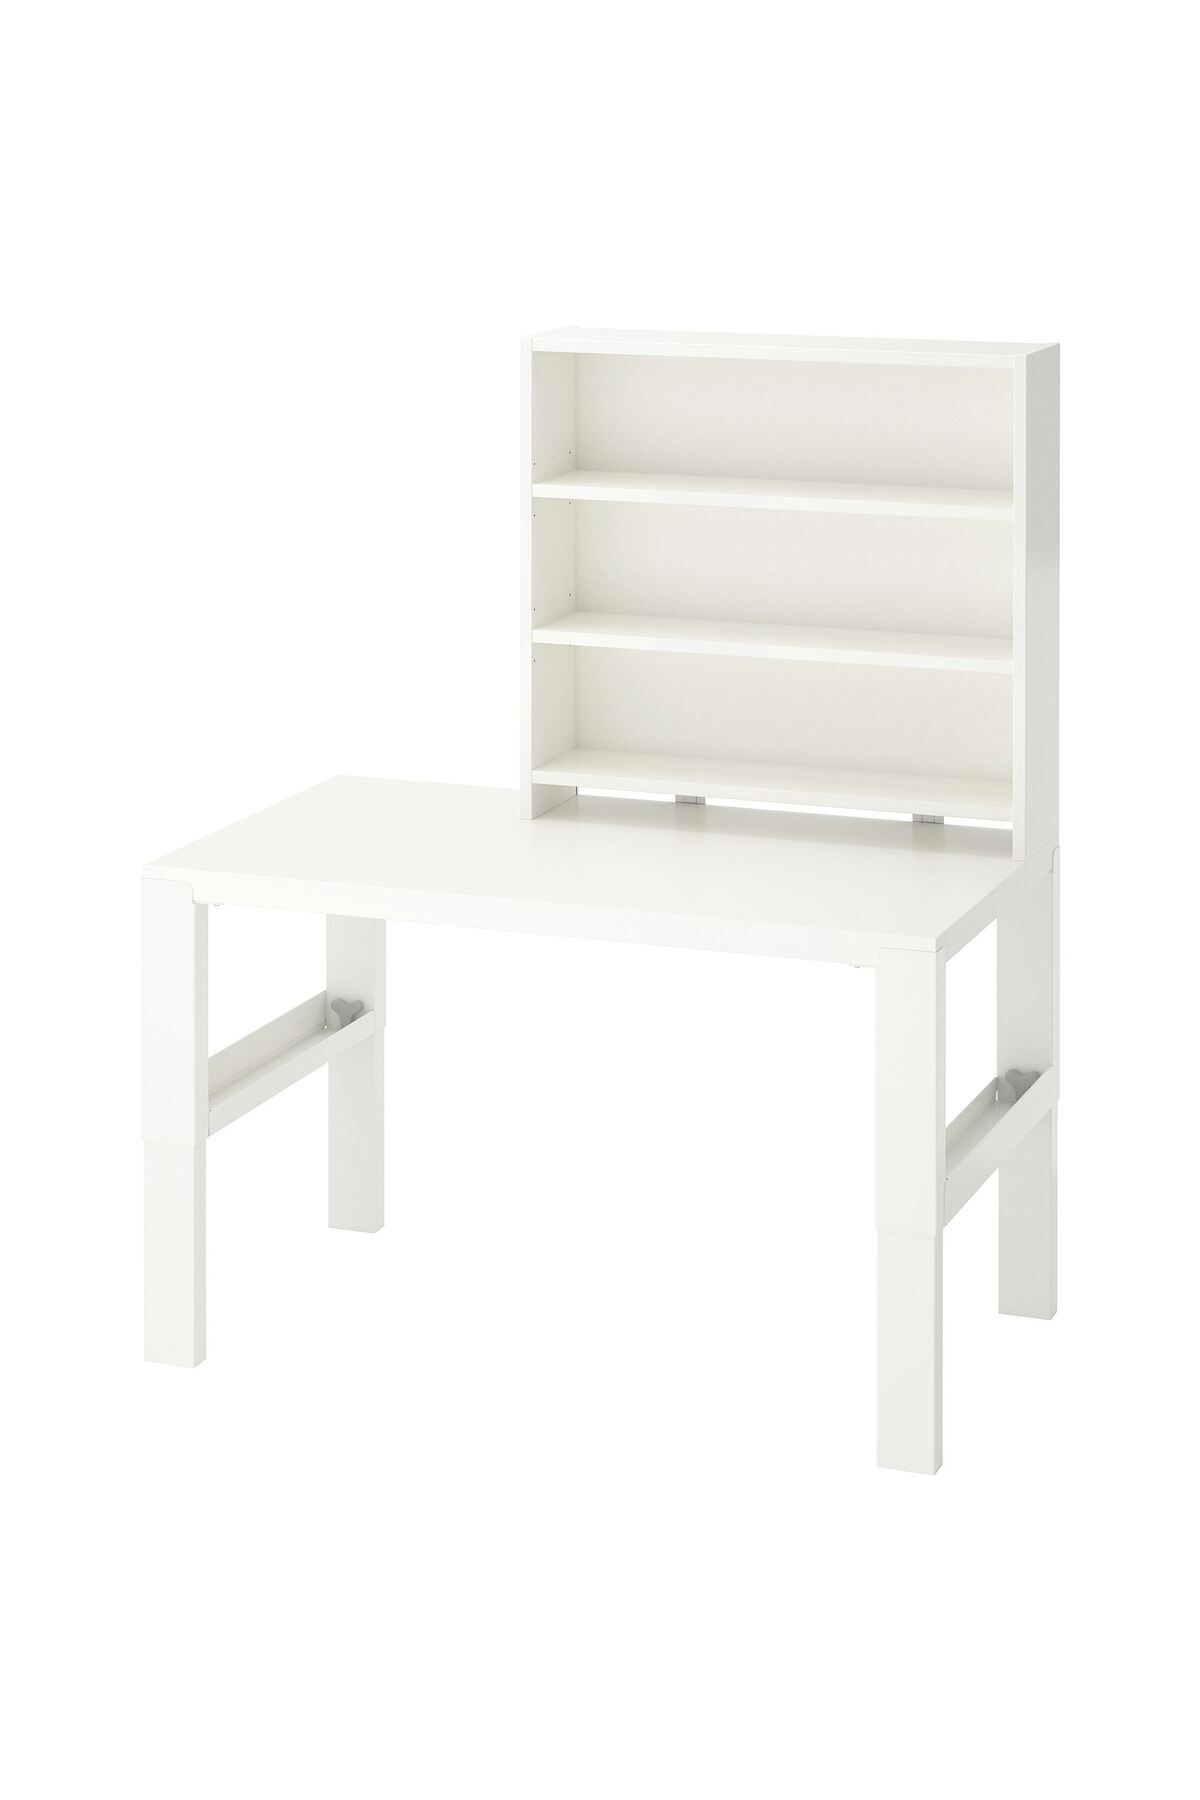 IKEA çocuk çalışma masası, beyaz-turkuaz, 96x58 cm, kitaplıkl